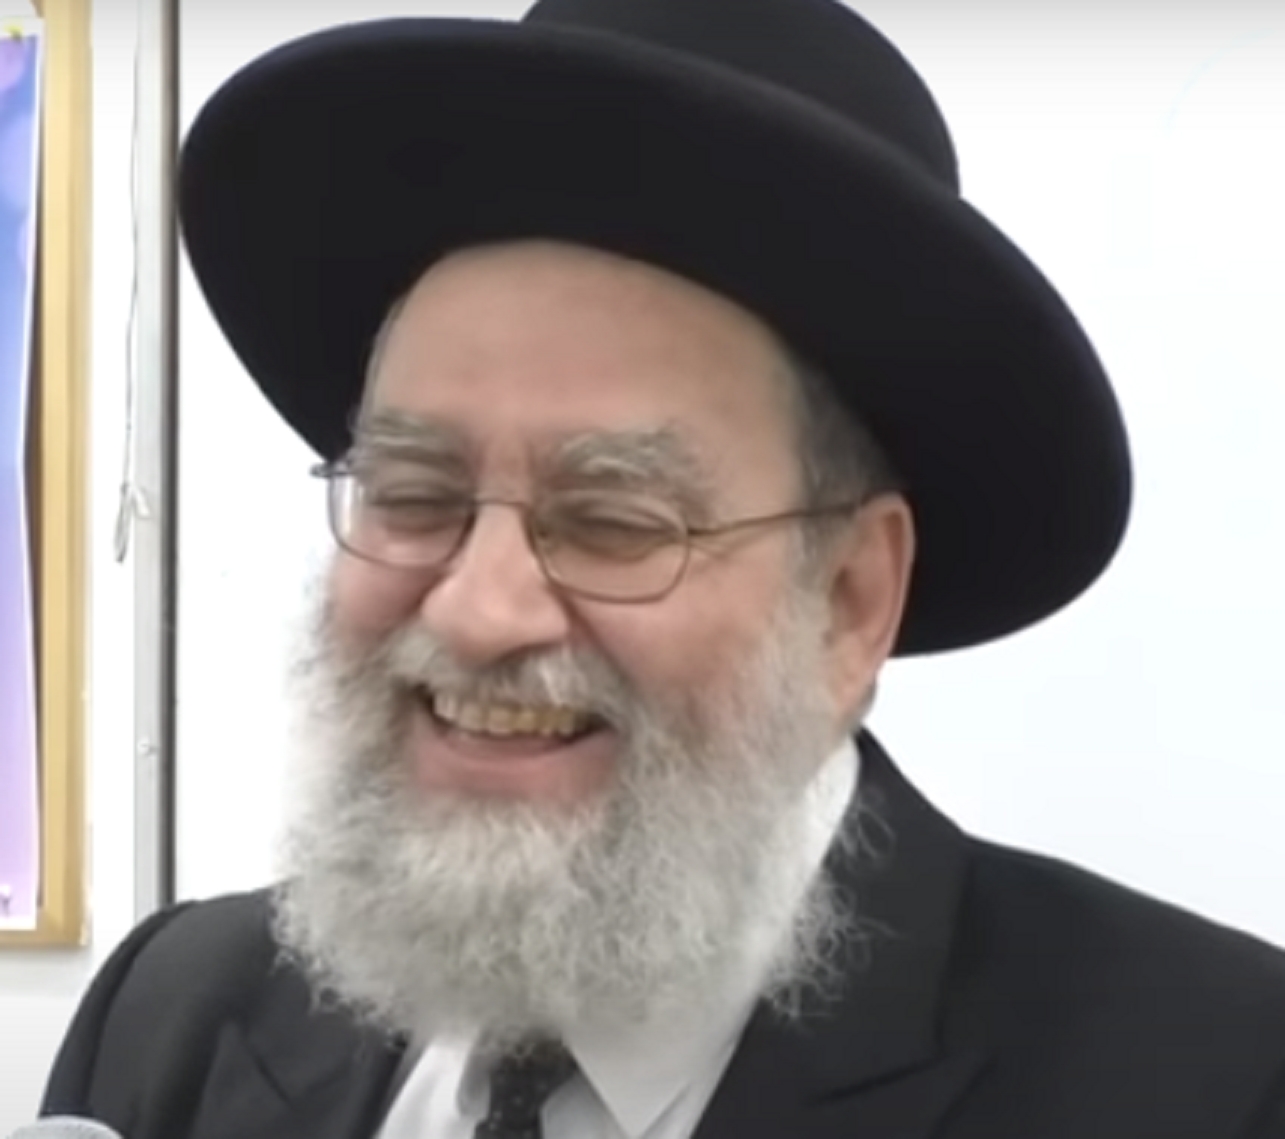 אריאל אדרי דיין בן עמלק בראש בית הדין היהודי לשיקום זונות בבאר שבע